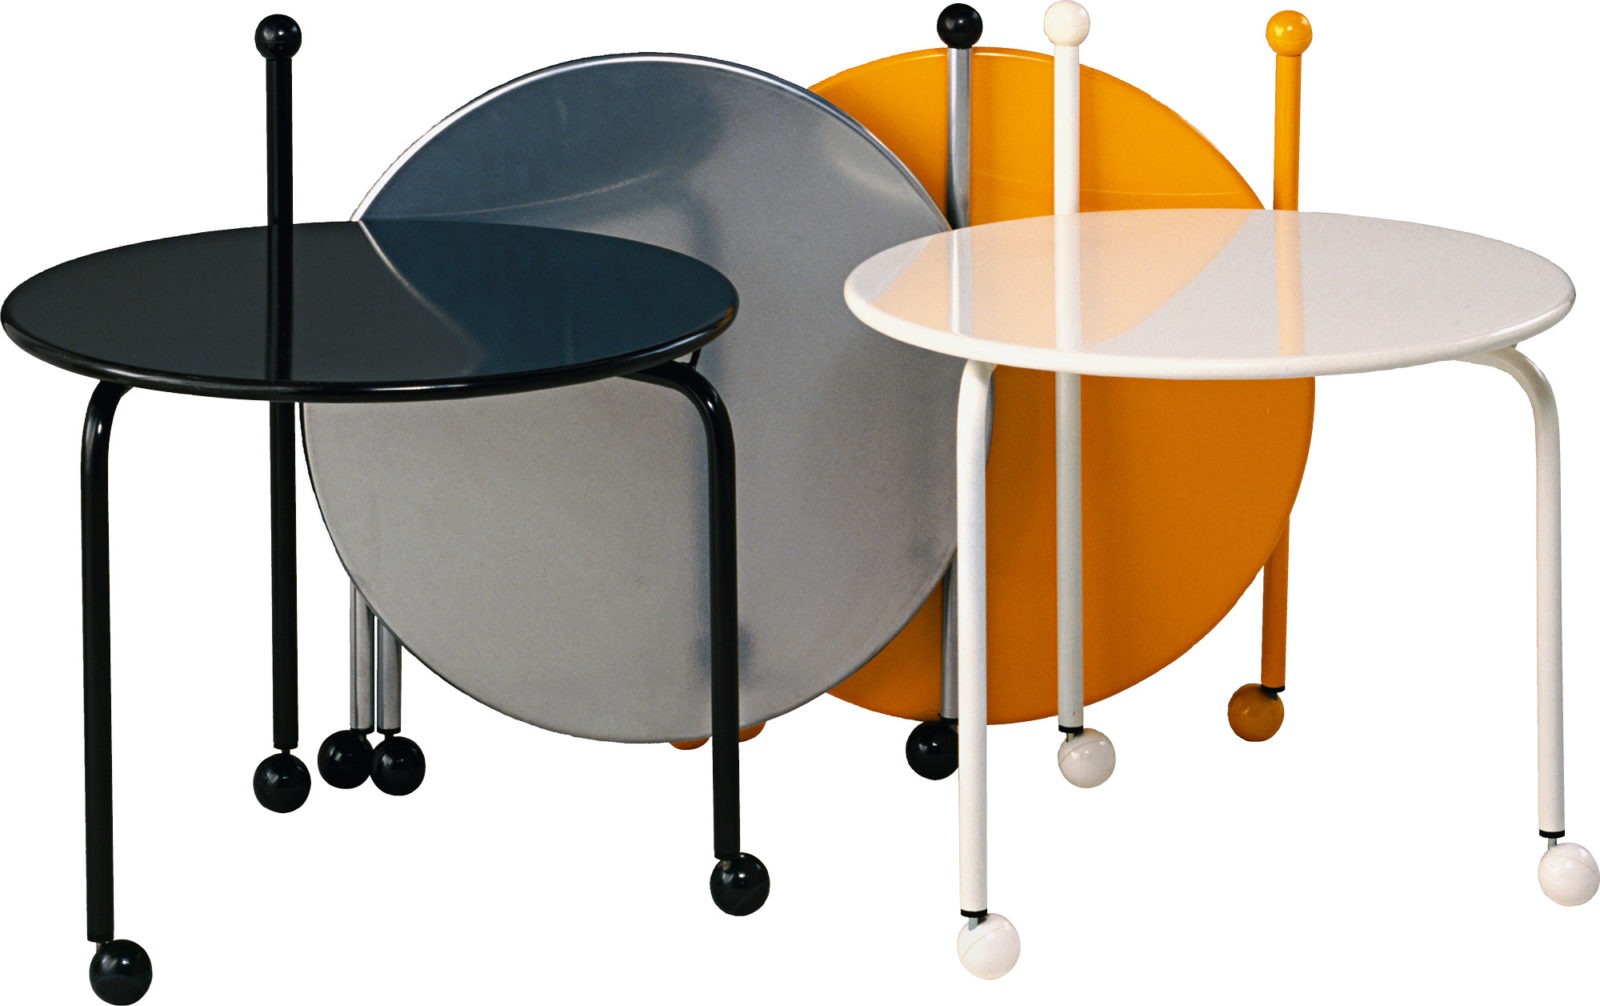 Fyra runda hopfällbara soffbord på hjul, i olika färger, varav två har uppfällda bordsskivor.